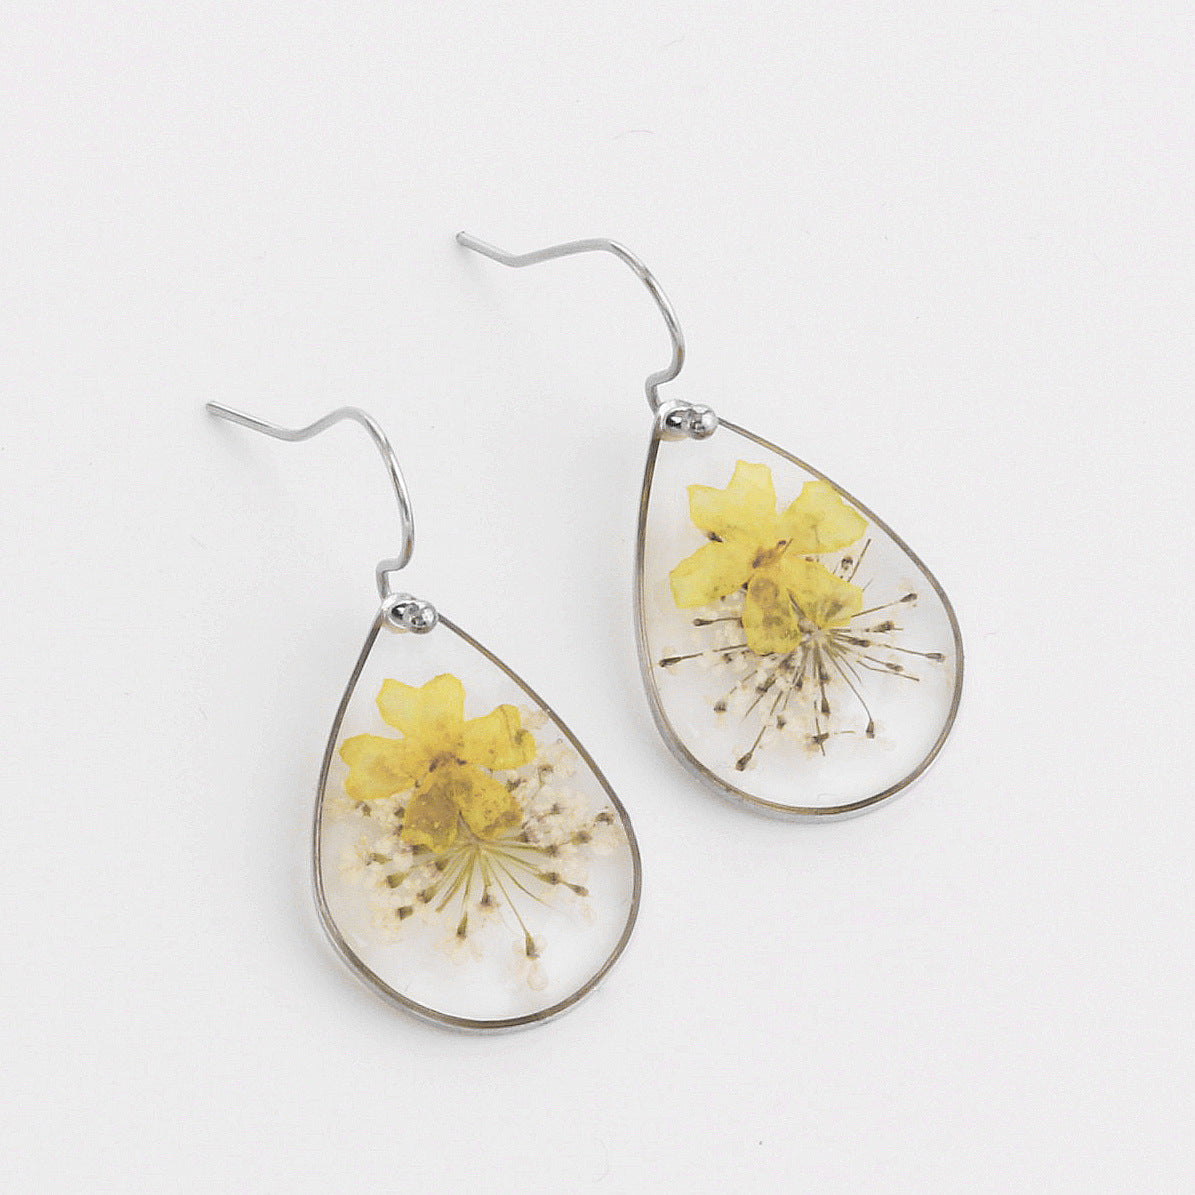 Preserved flower earrings